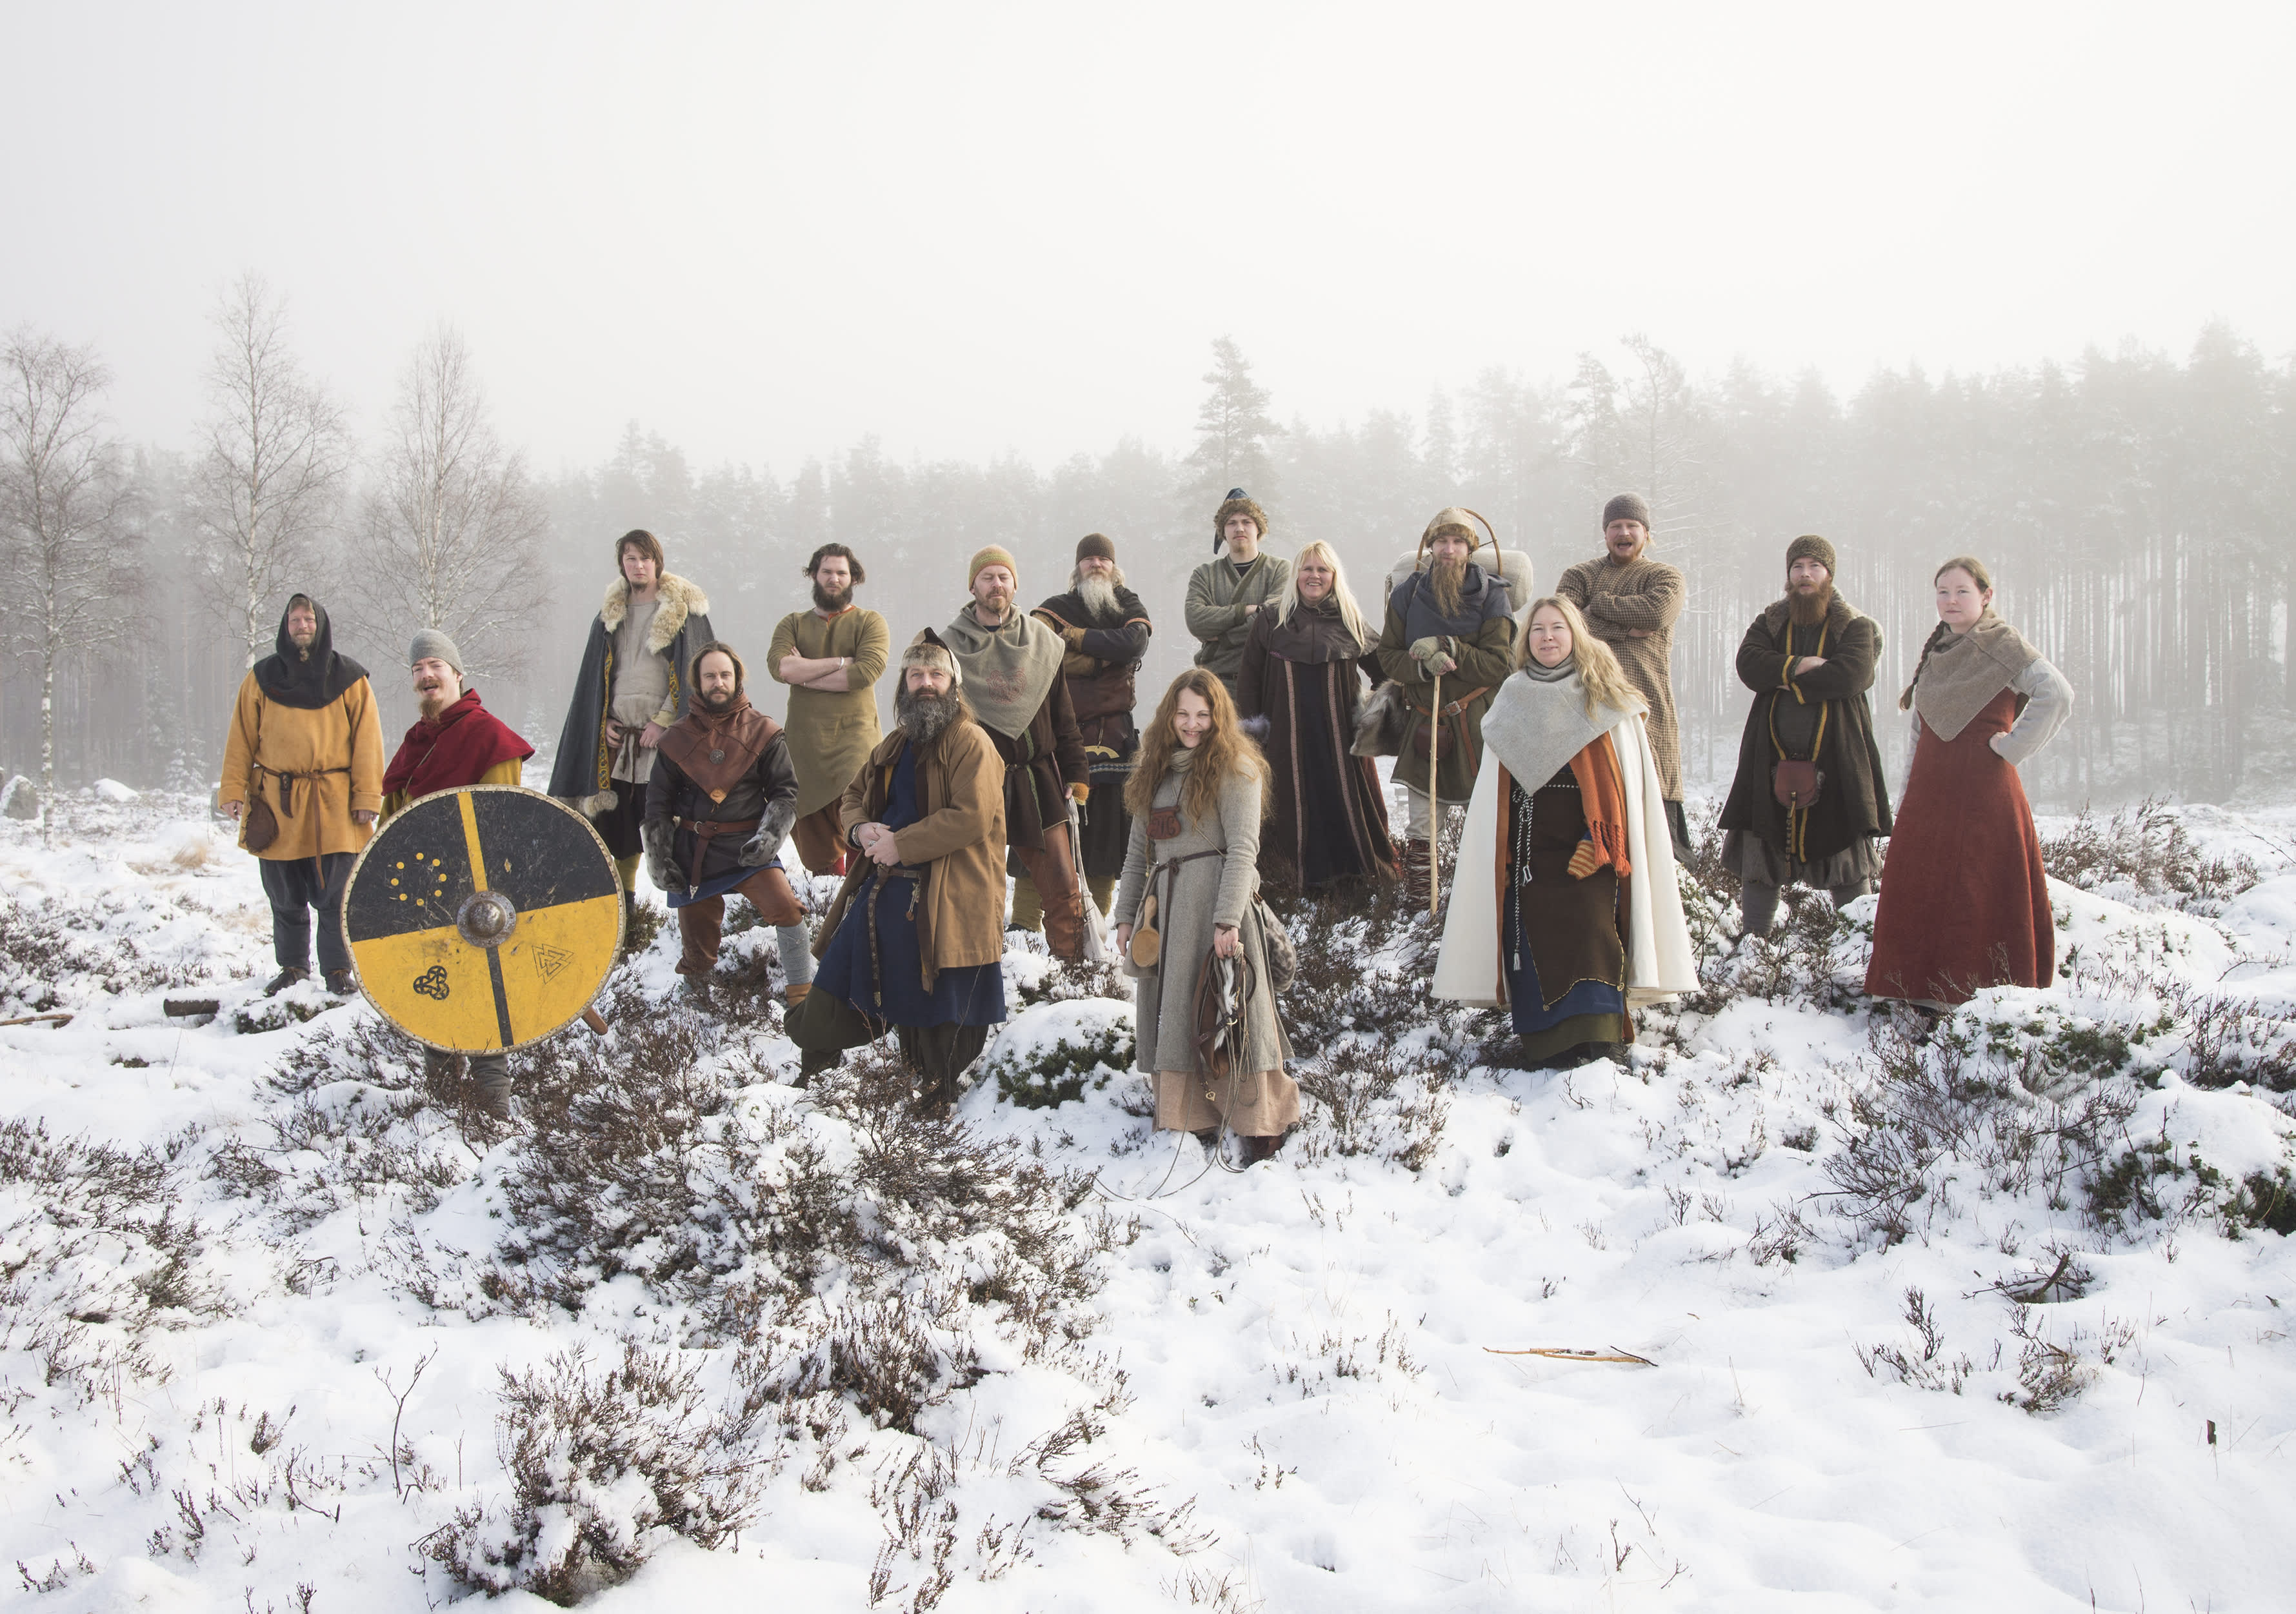 Vikings gathered at Tingvatn